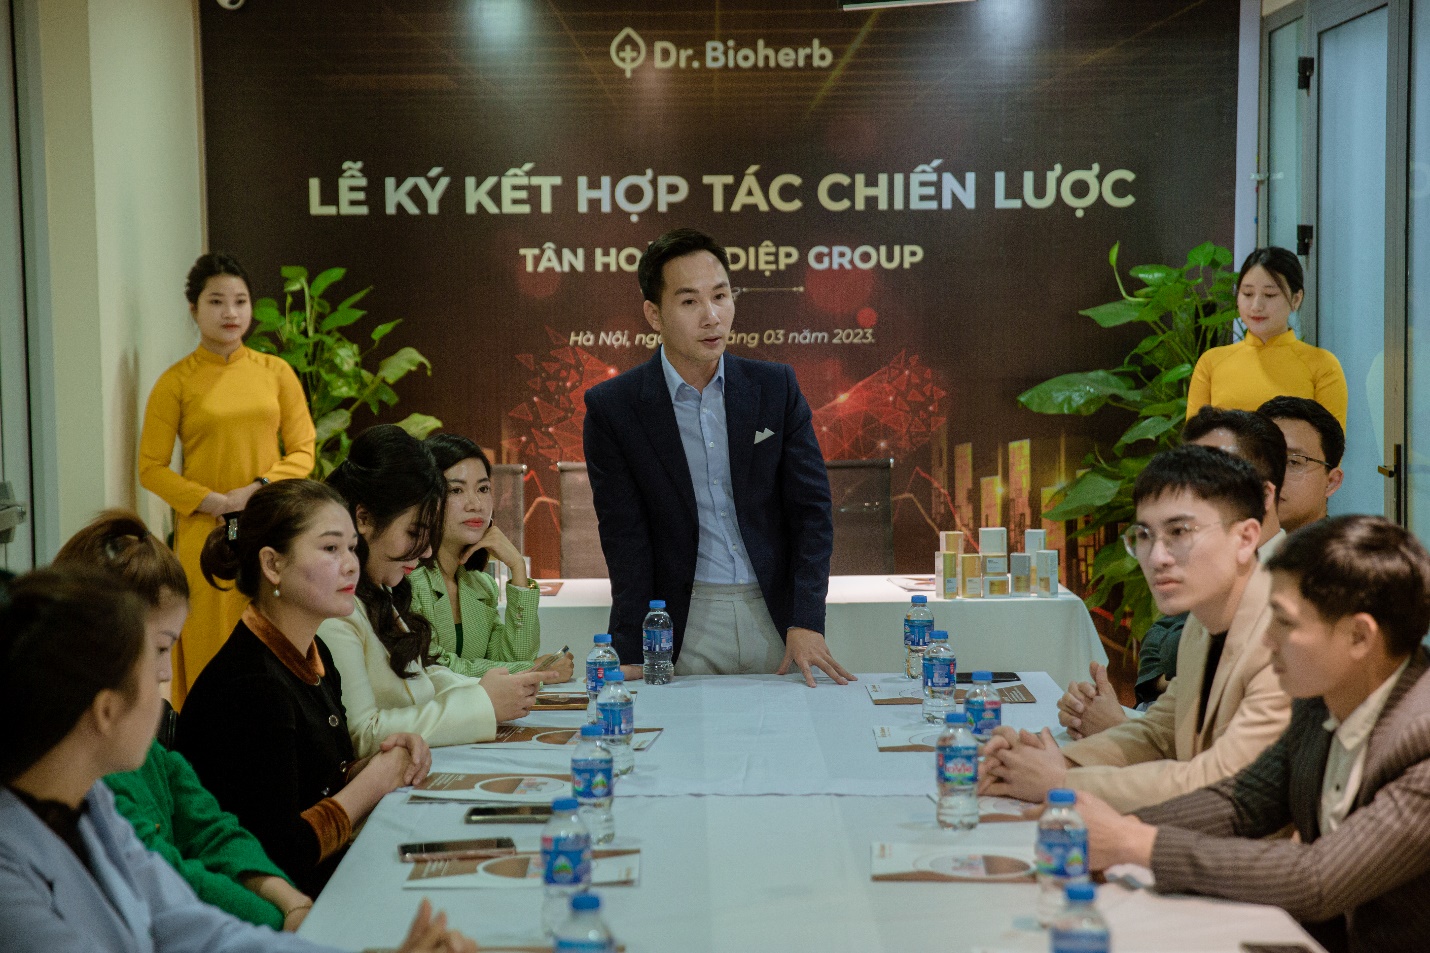 DR.Bioherb cung cấp giải pháp toàn diện cho các chủ cơ sở làm đẹp và người tiêu dùng Việt - 3